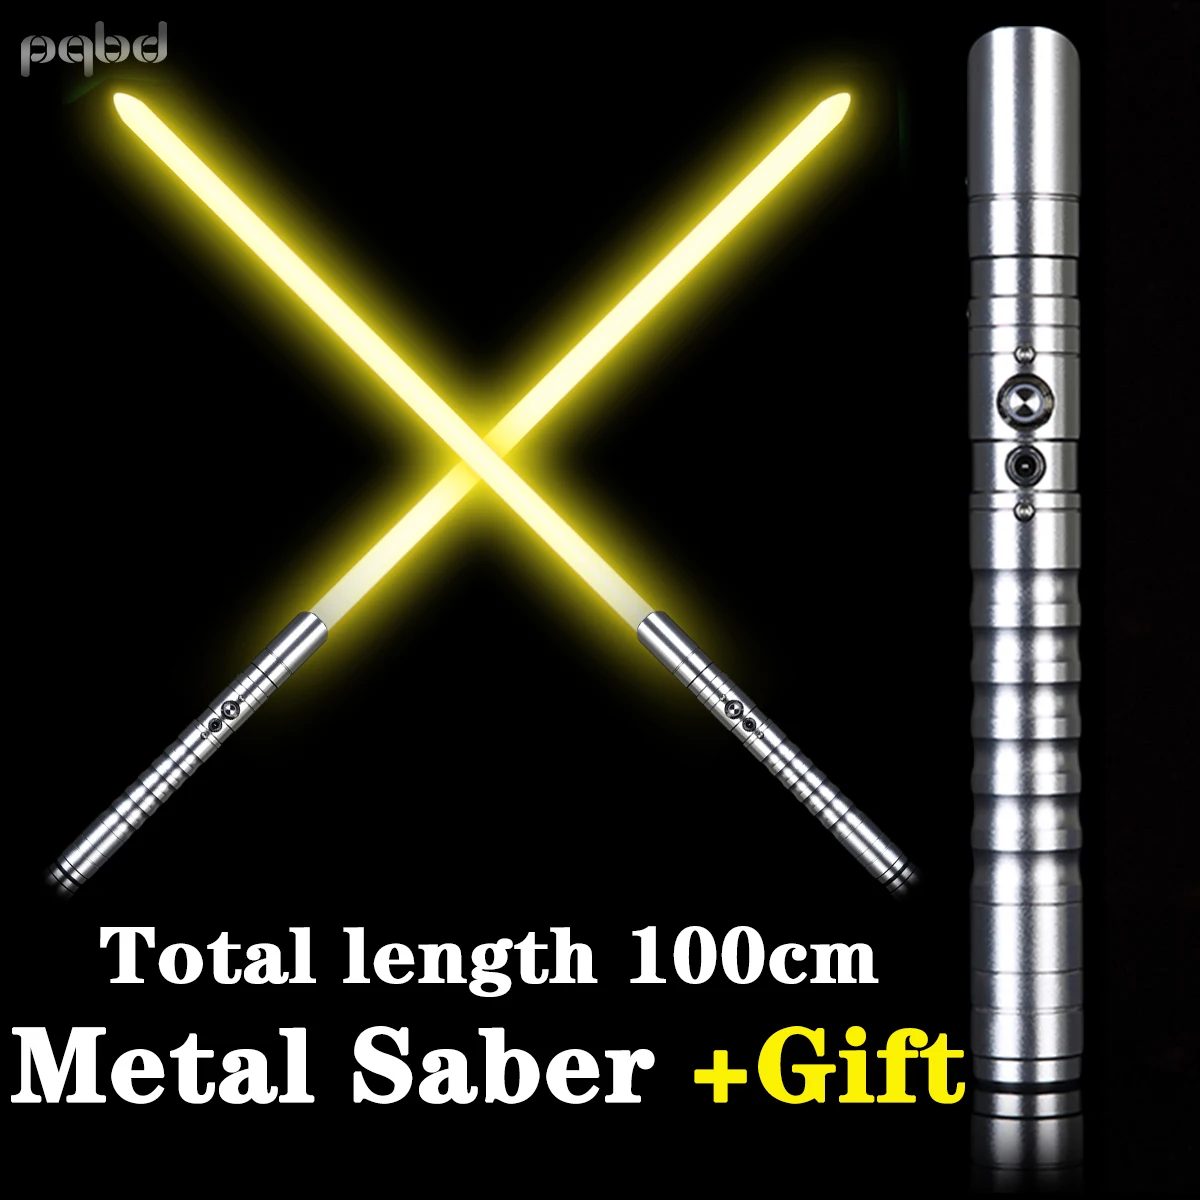 pqbd световой меч RGB 11 Color Change Heavy Dueling Sound Metal Light Saber Force FX Blaster Toy Luces LED Lightsaber Gift |